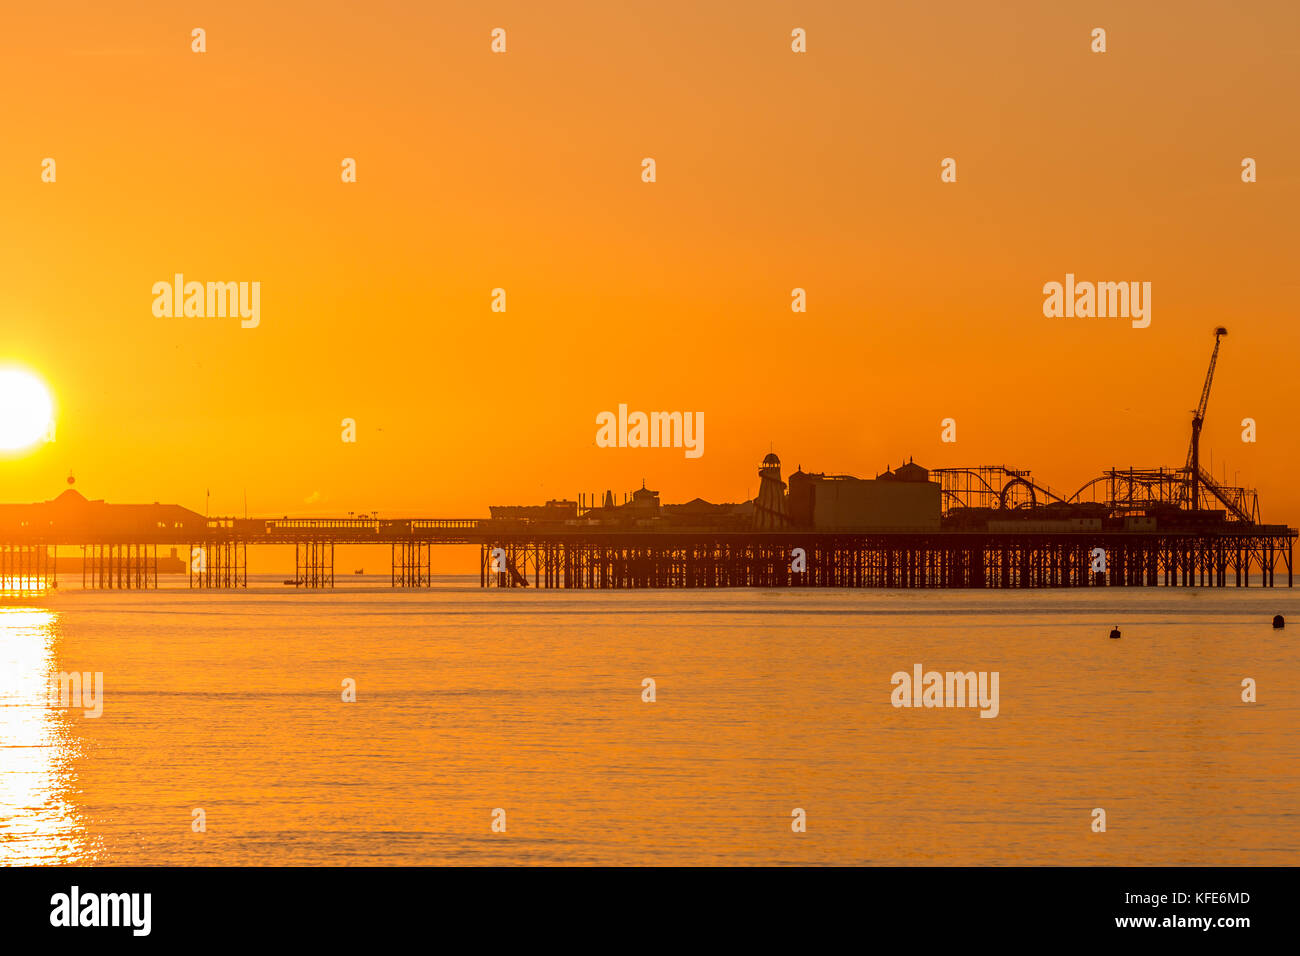 Palace Pier, Brighton im Morgengrauen. die Sonne die Szene in einem sanften orange Glühen gebadet hat Stockfoto